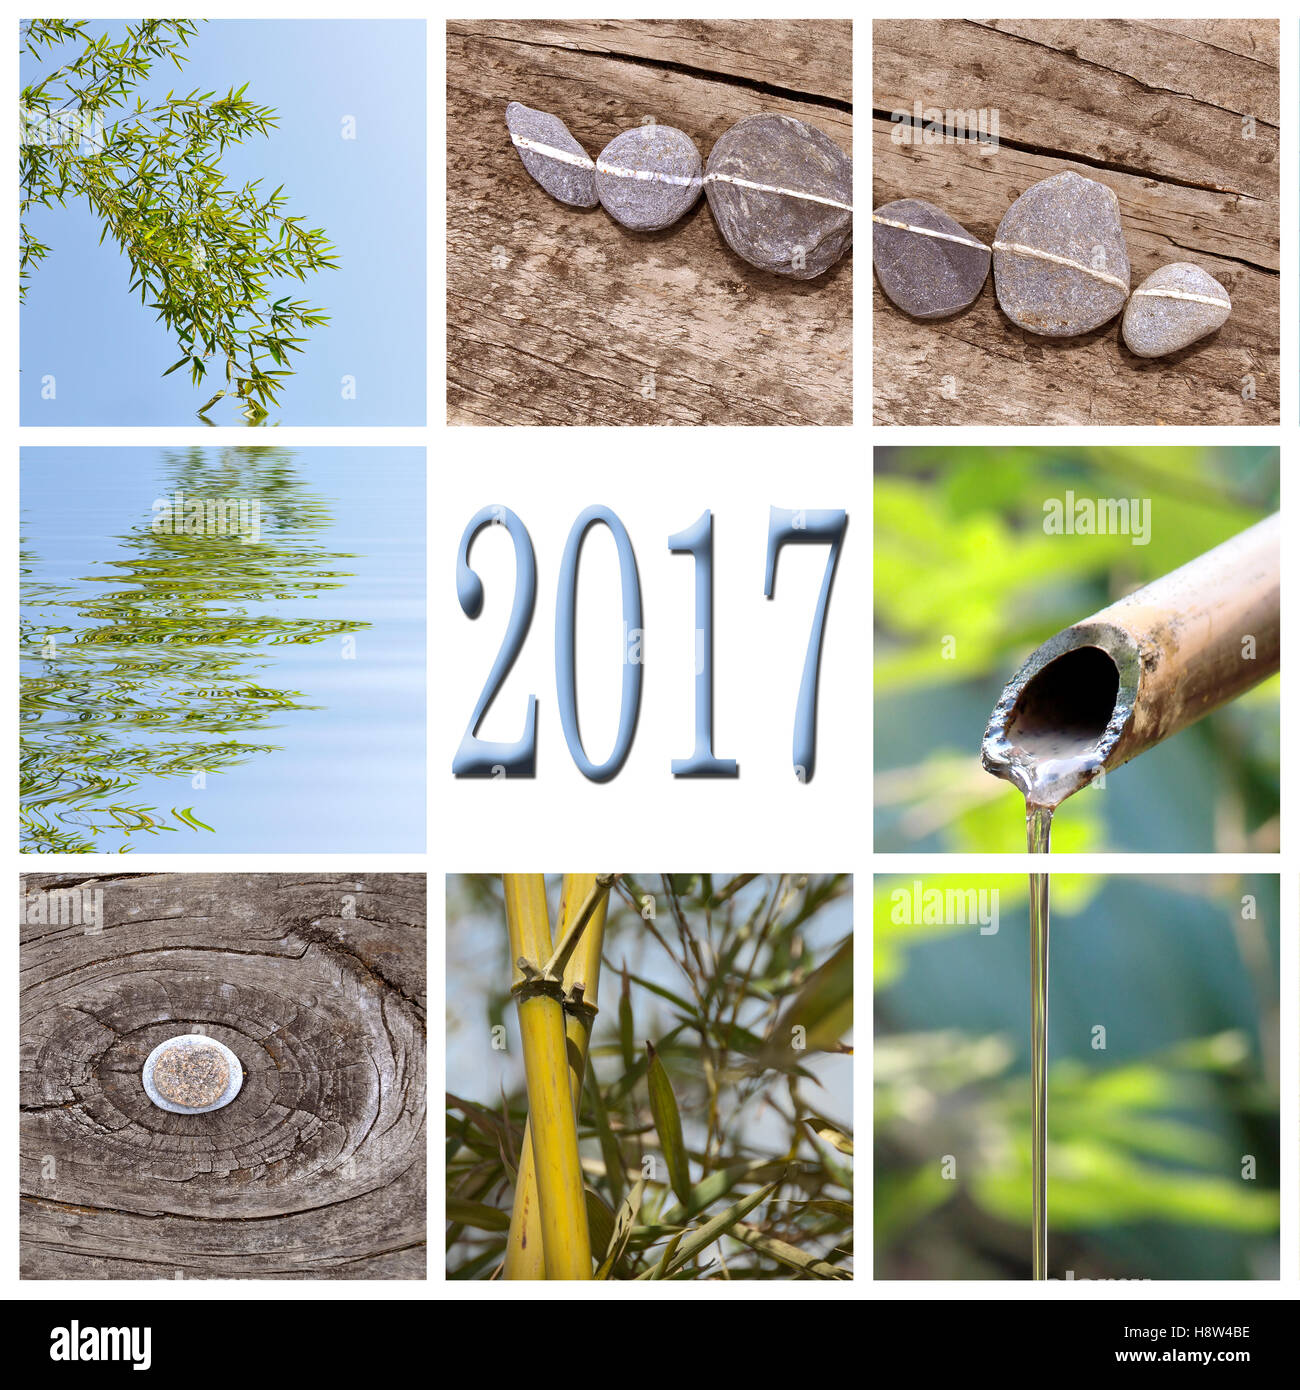 2017, bambou zen square collage Banque D'Images